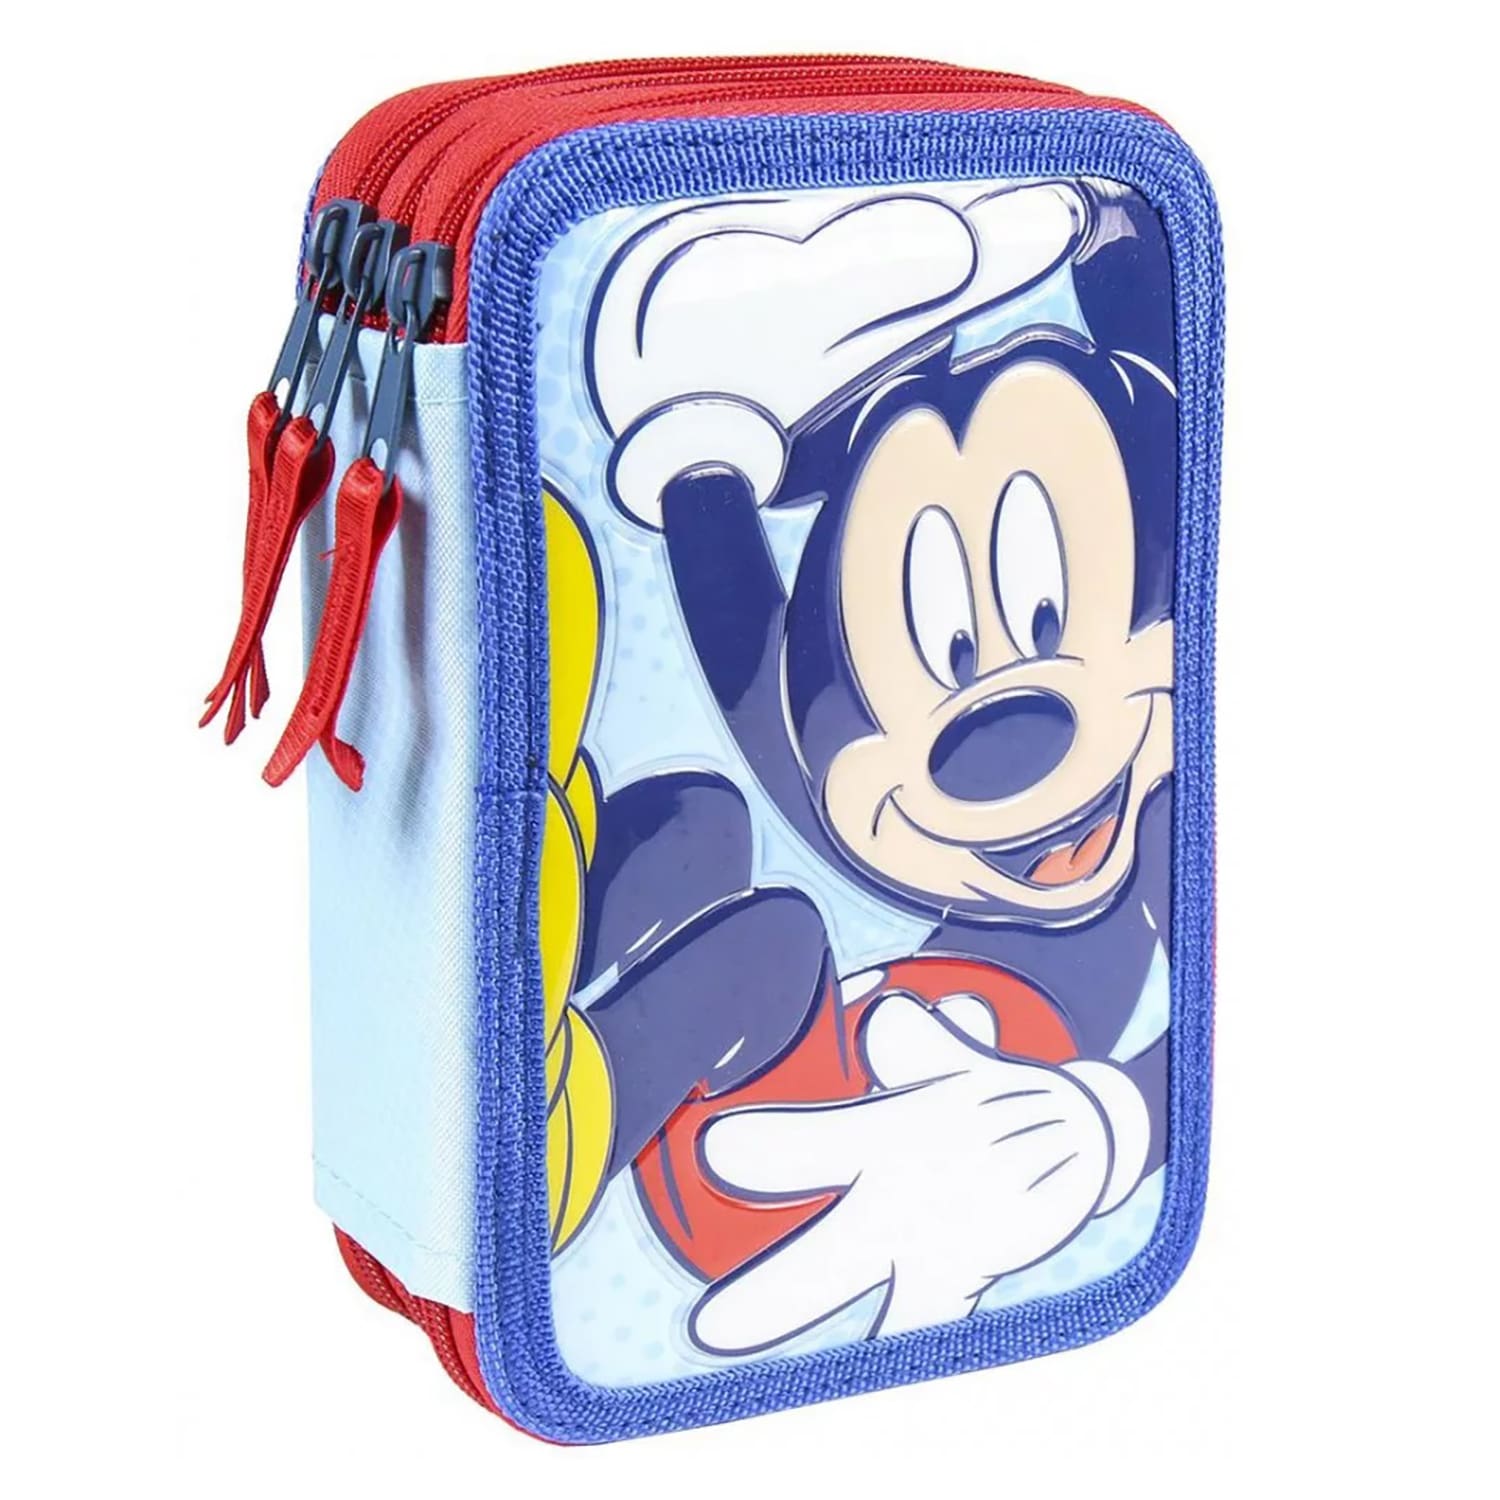 Astuccio borsello scuola Disney Mickey Mouse colori Giotto 3 scomparti 4325